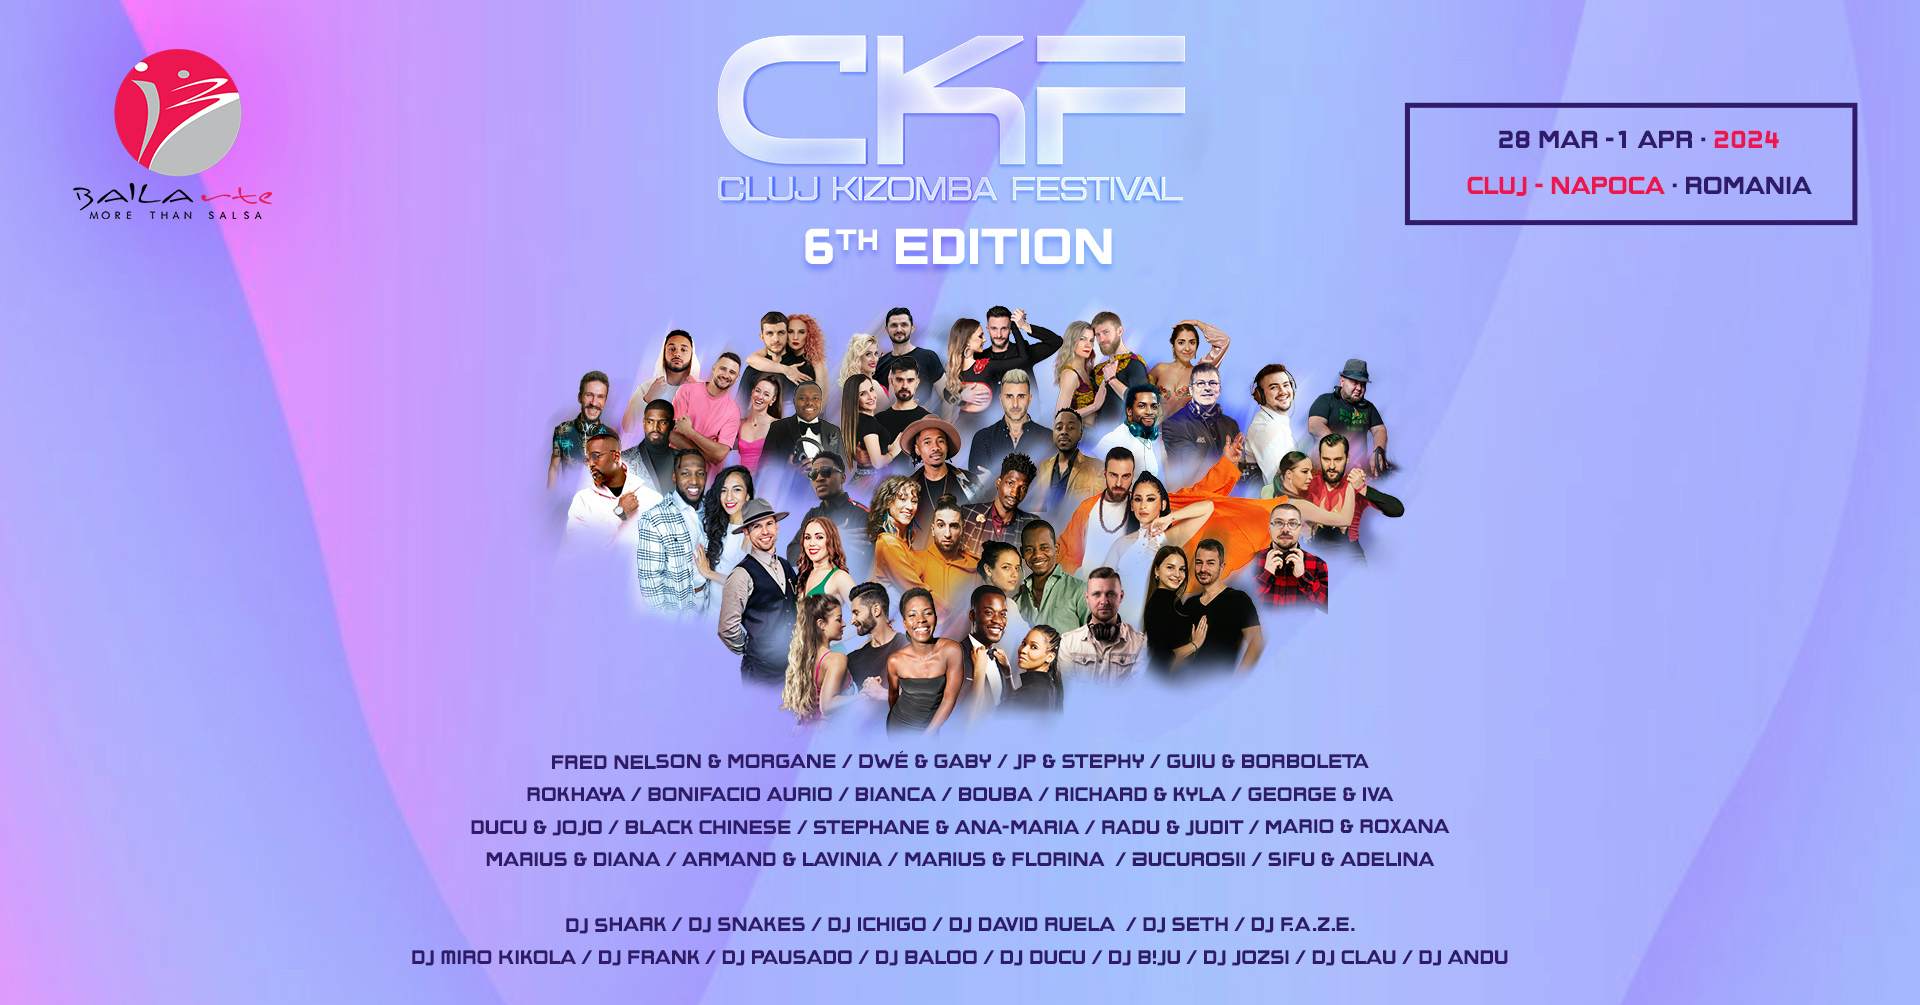 Cluj Kizomba Festival 2024 (6ª edición) go&dance